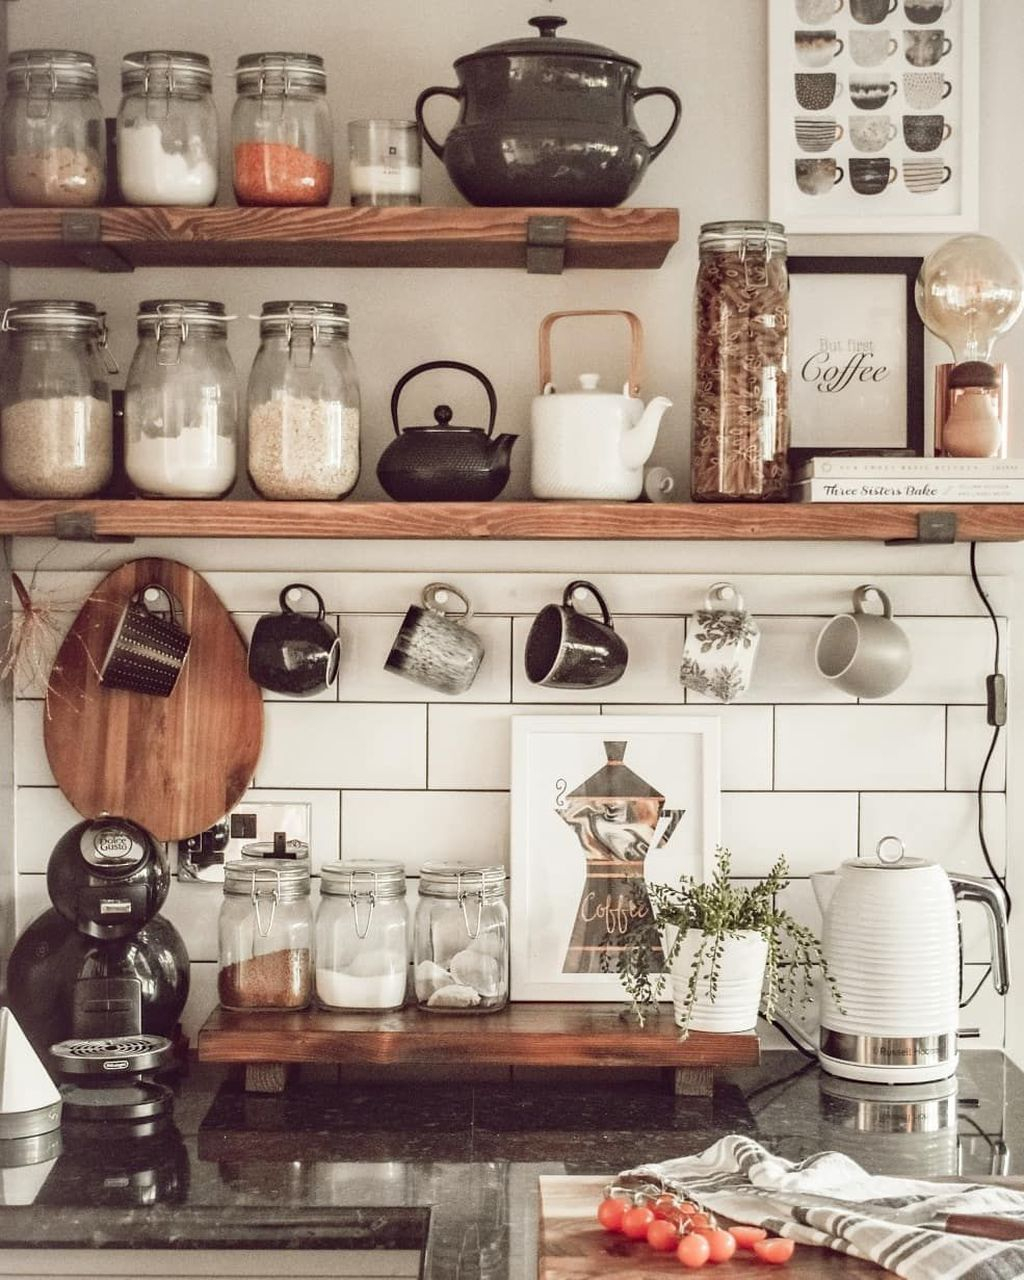 Wonderful Industrial Kitchen Shelf Design Ideas To Organize Your Kitchen13